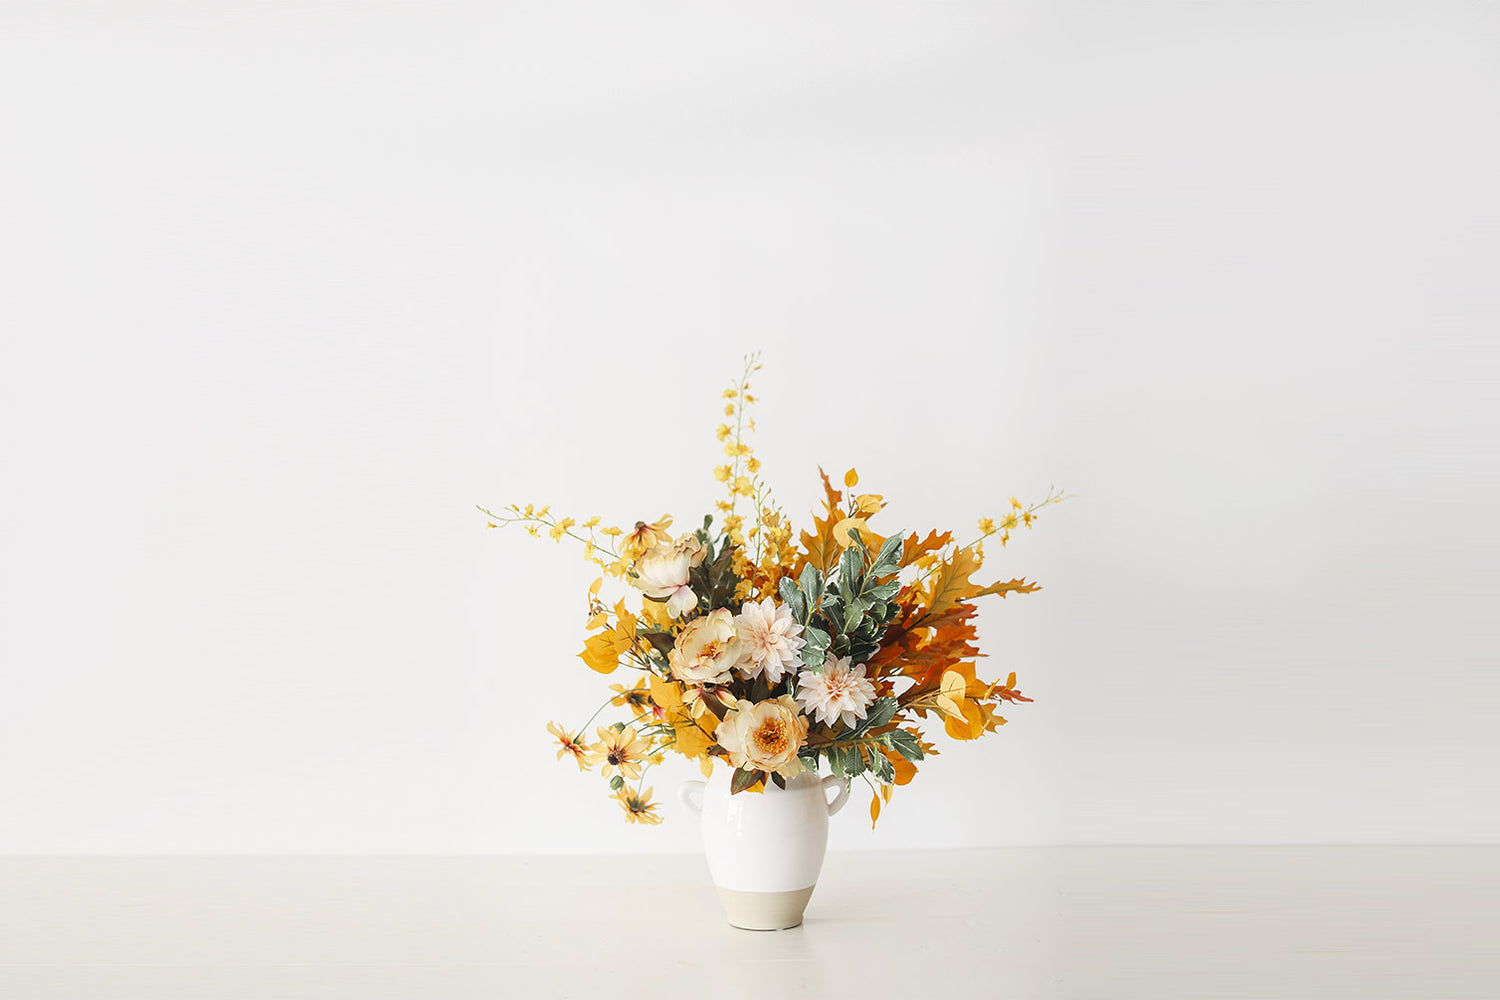 How to Make A Fall Flower Arrangement